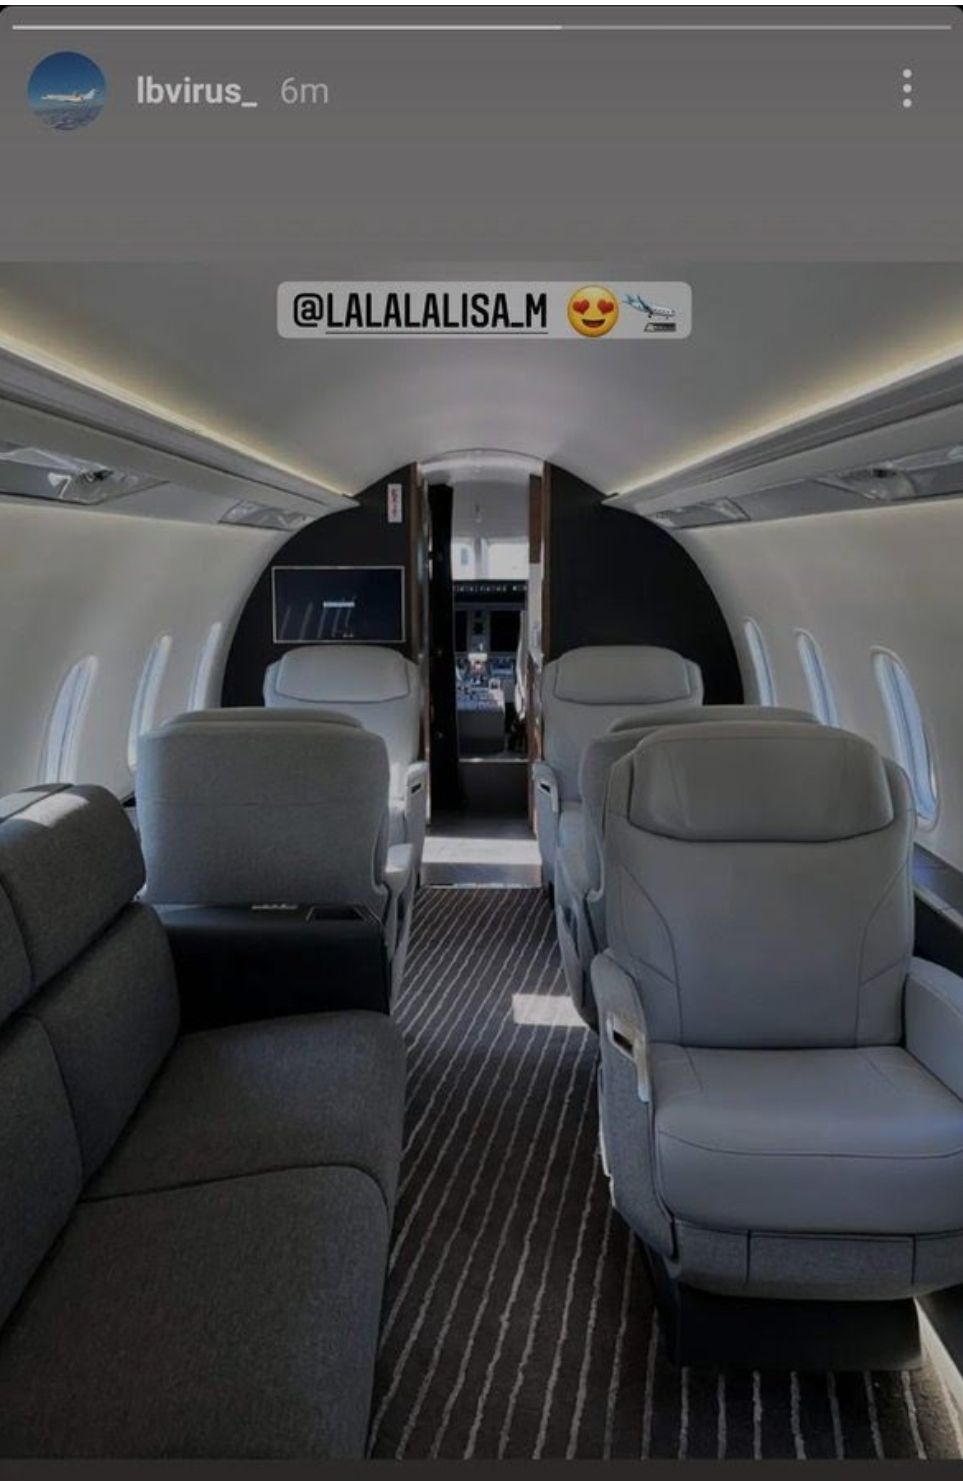 Seorang insinyur pesawat pribadi bernama Josh Jung mengunggah foto interior pesawat dan menandai Lisa. /Instagram/lbvirus_